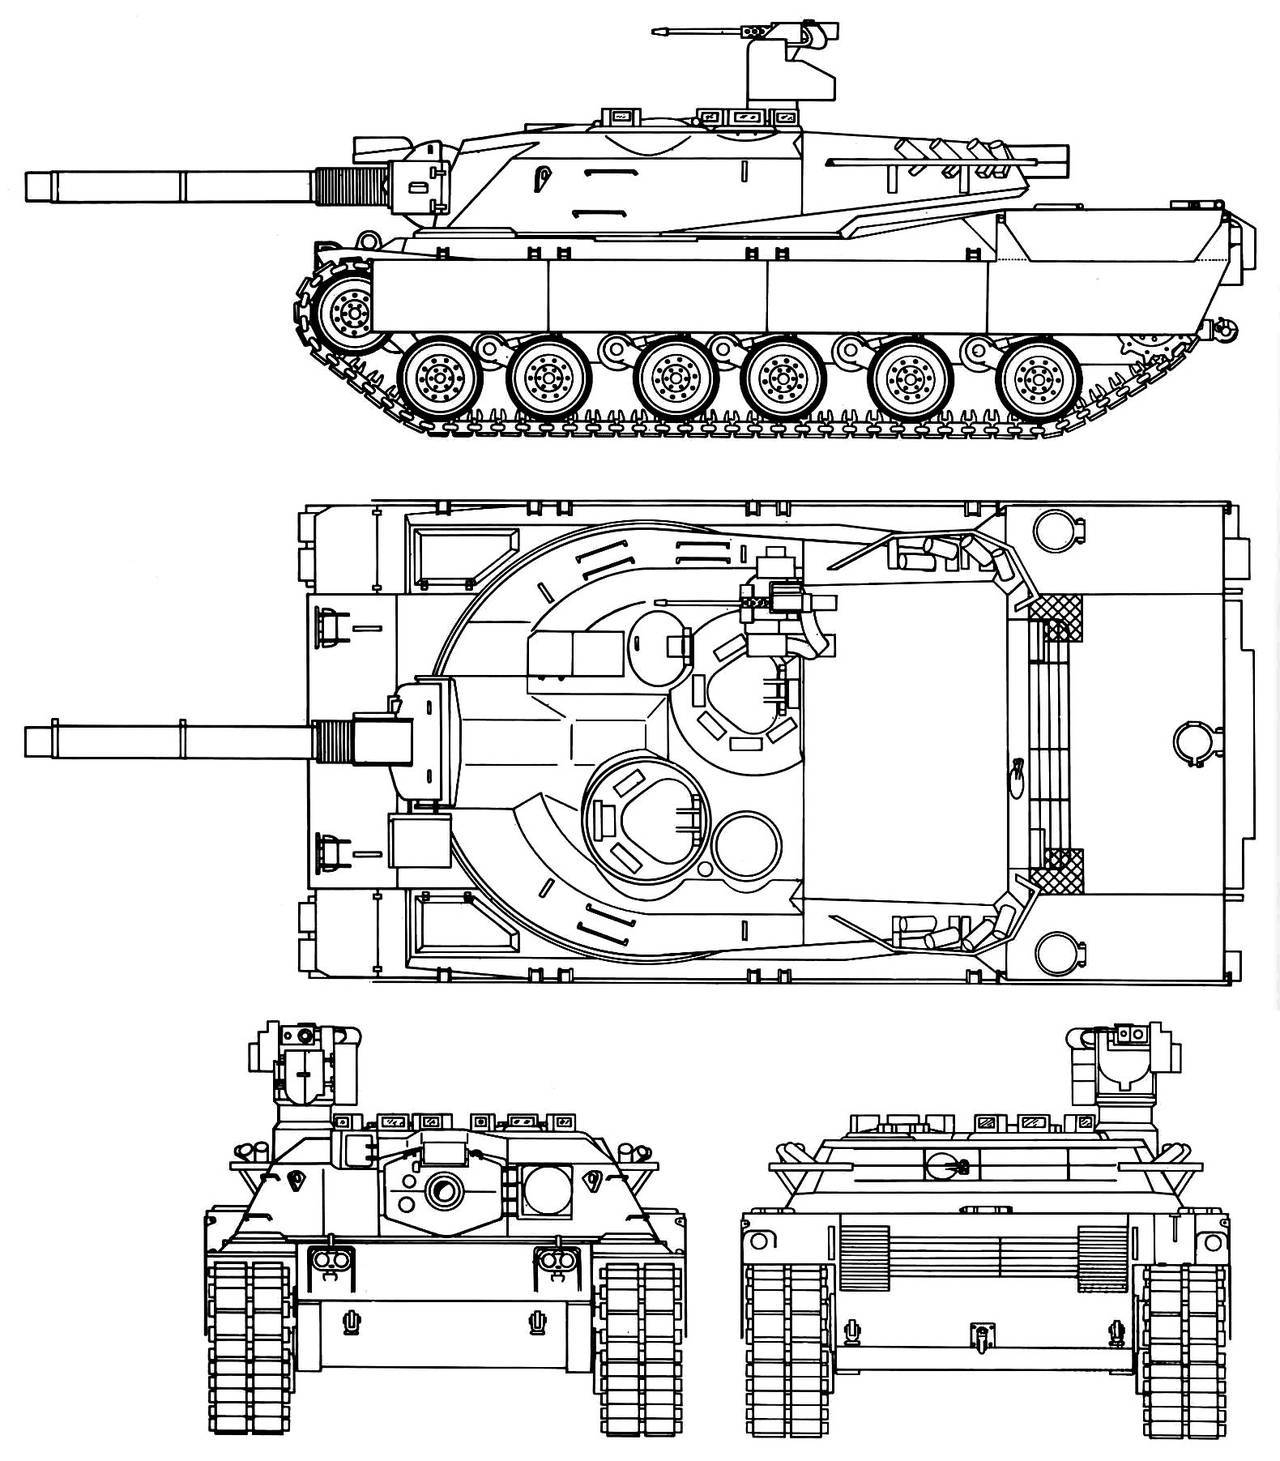 Чертеж танка. Танк м1 Абрамс чертежи. Xm803 основной боевой танк. Американский танк Абрамс чертеж. Чертеж танка Абрамс.